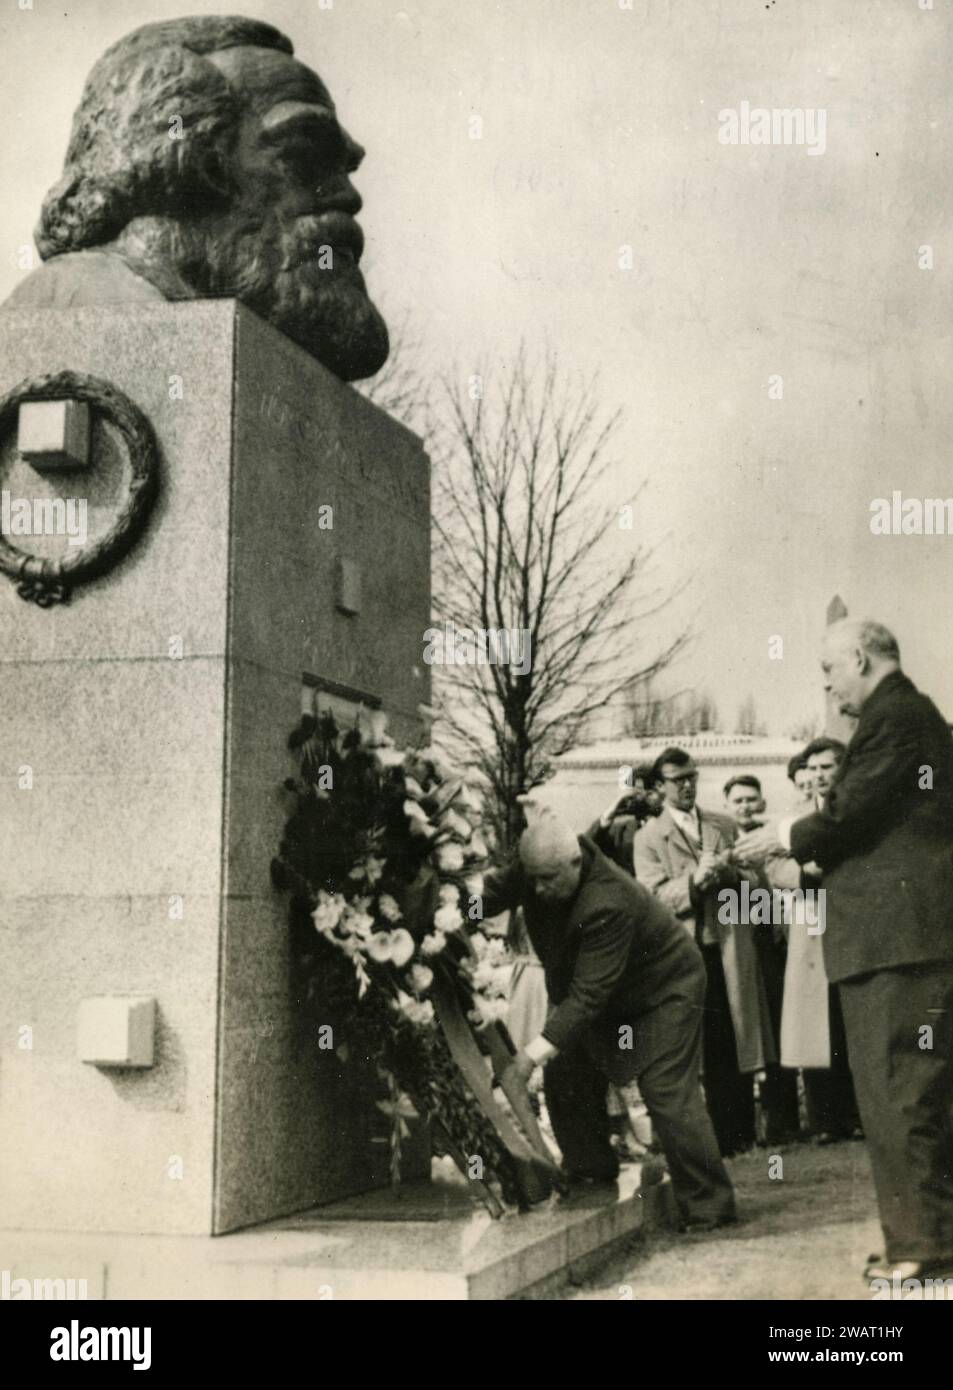 Le maréchal russe Nikolaï Bulganine et Nikita Krouchtchev rendent hommage à la tombe de Karl Marx, cimetière de Highgate, Londres, Royaume-Uni 1956 Banque D'Images